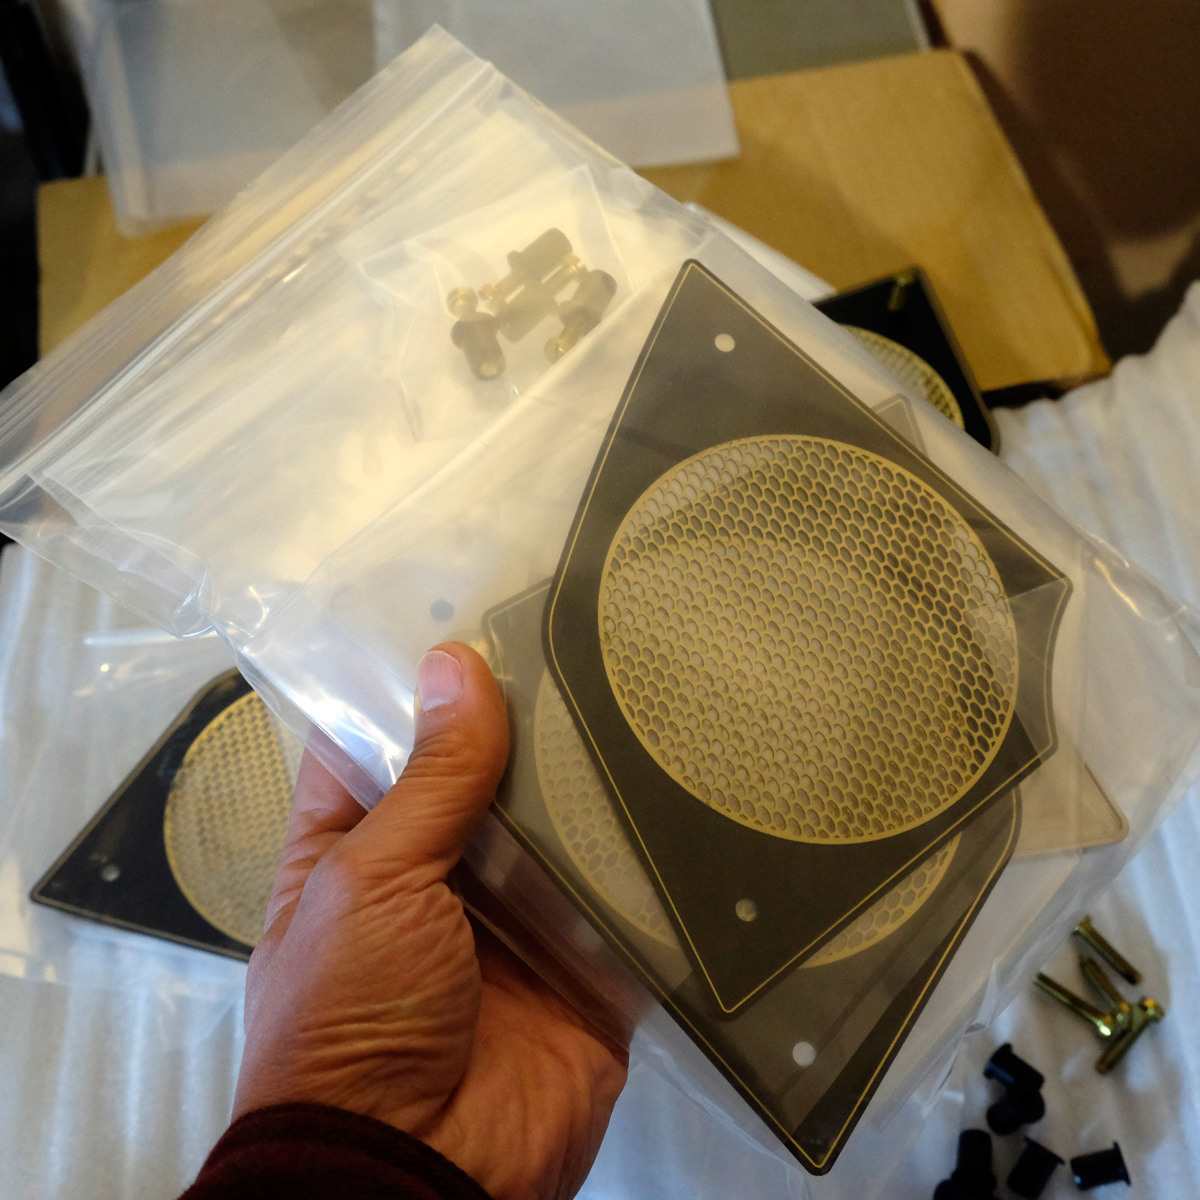 FXRT, FXRD fairing aluminum speaker covers